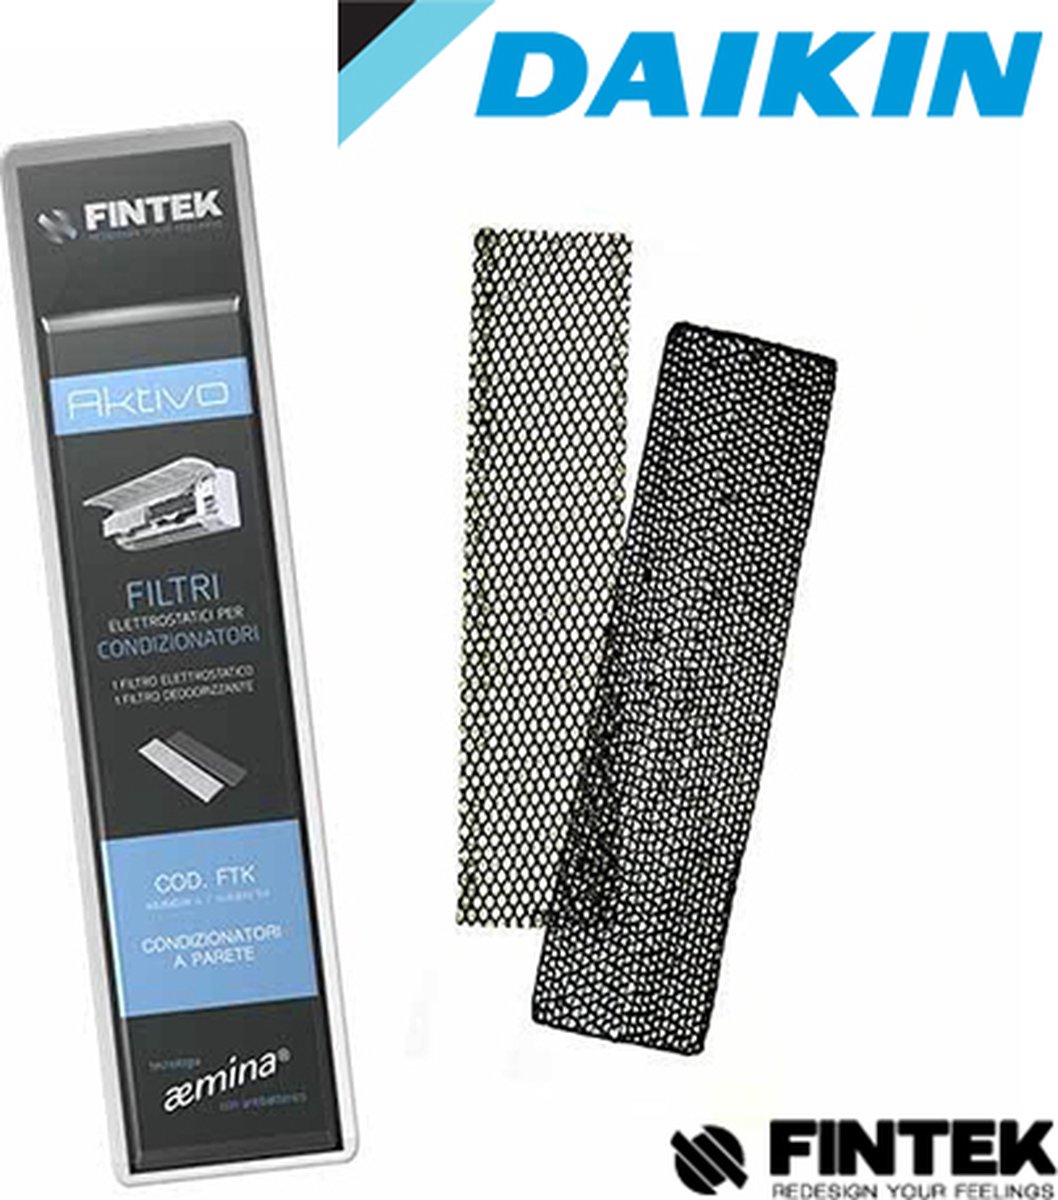 Filtre Fintek aktivo FA50 pour climatiseurs Daikin , meilleurs que  l'original sont ces... | bol